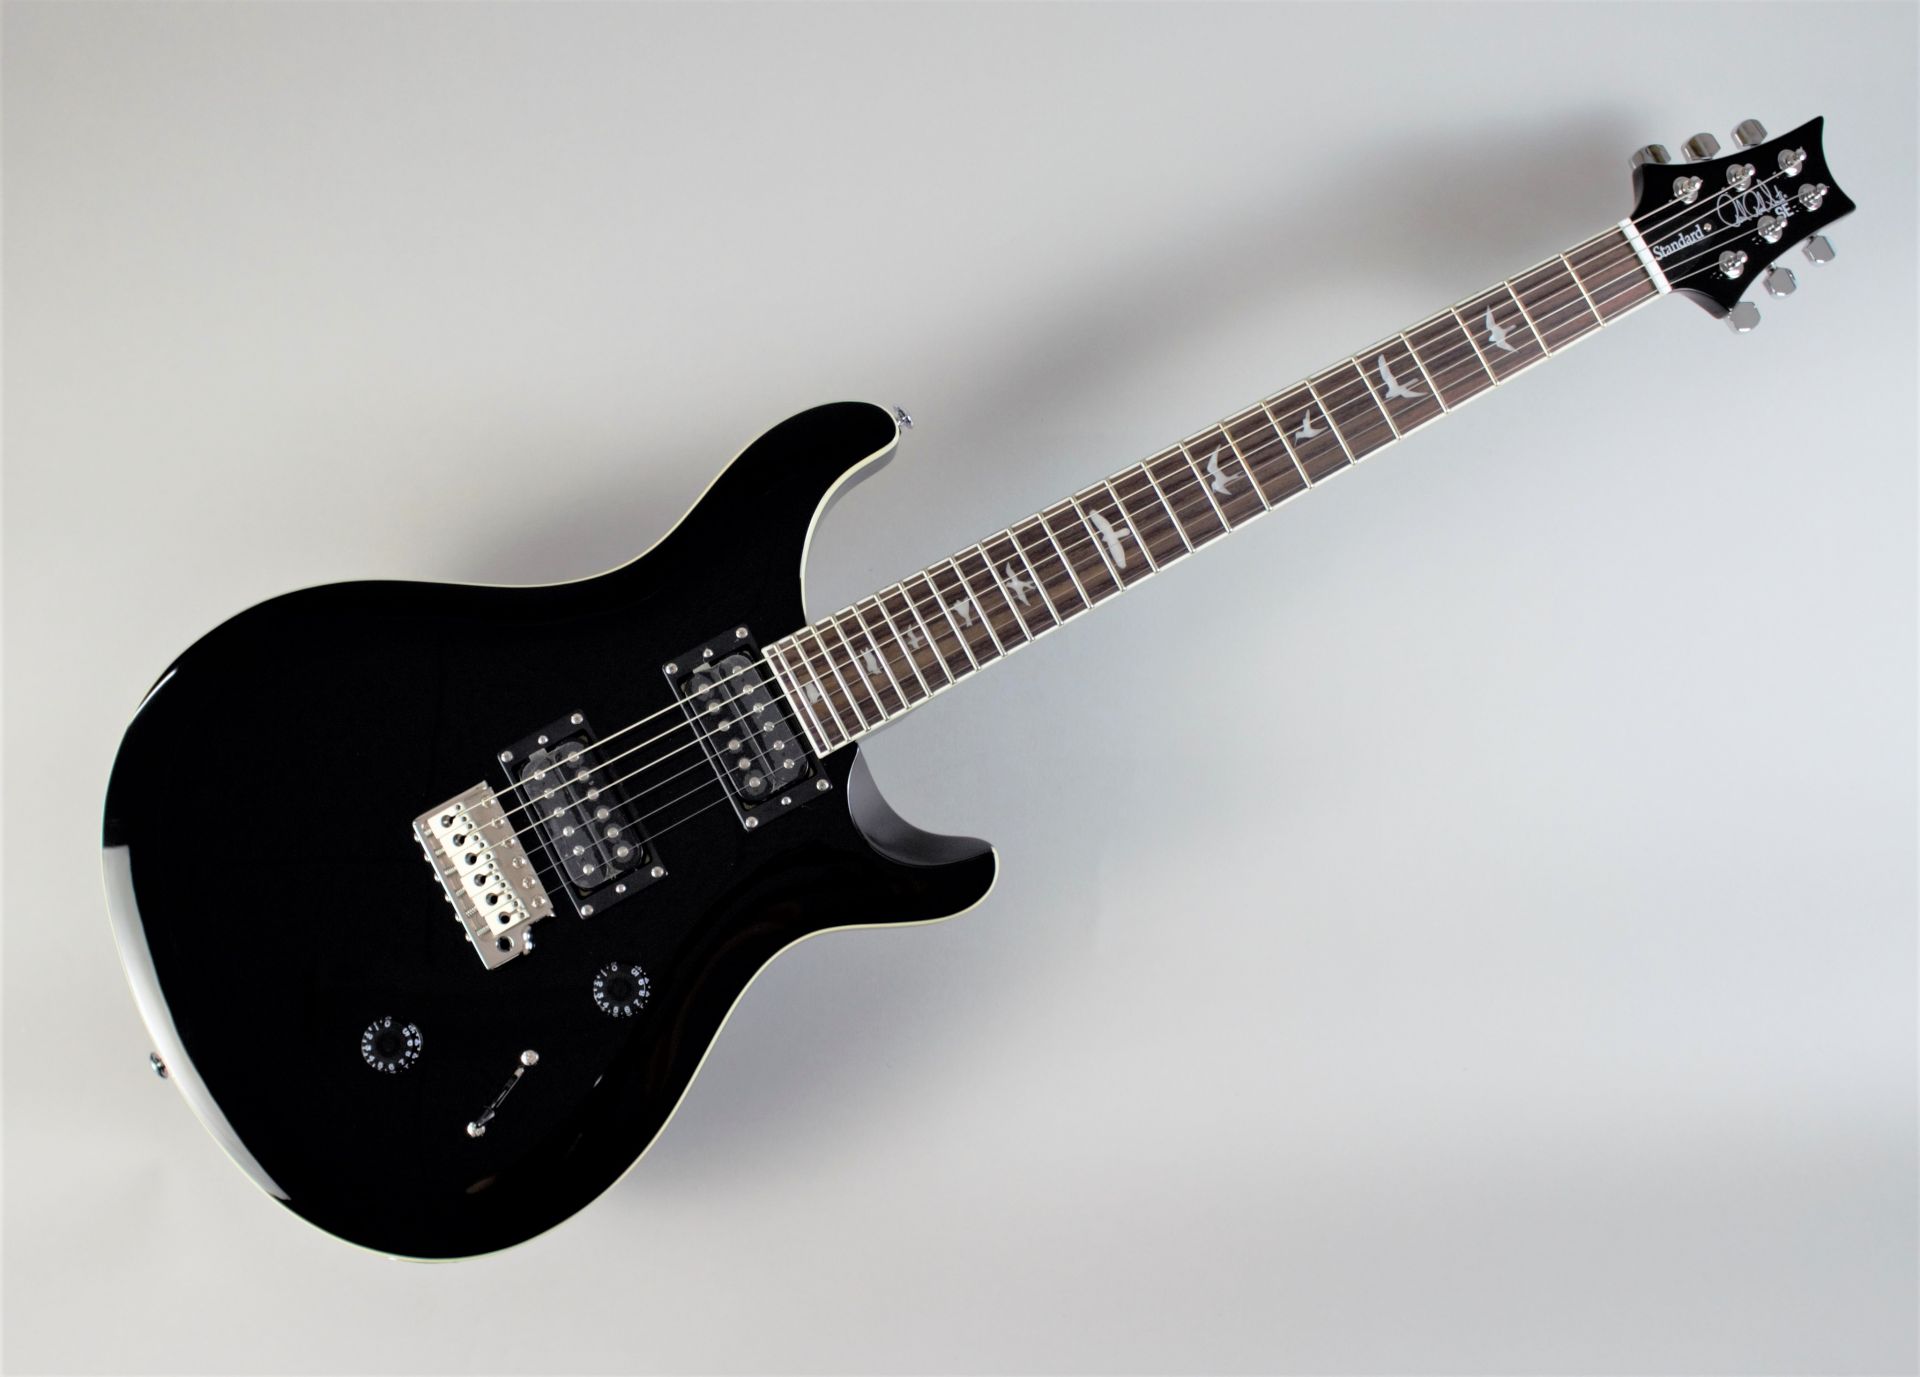 *本日入荷！精悍なBLACKカラーを身にまとったSE Standard 24 「初めてのギター」にも「“これぞ”の1本」にも最適なギター「PRS SE Standard 24」 今回このオリジナルカラーを採用した島村楽器オーダーモデルが発売しました！ - PRS STANDARD 24シリーズをベー […]